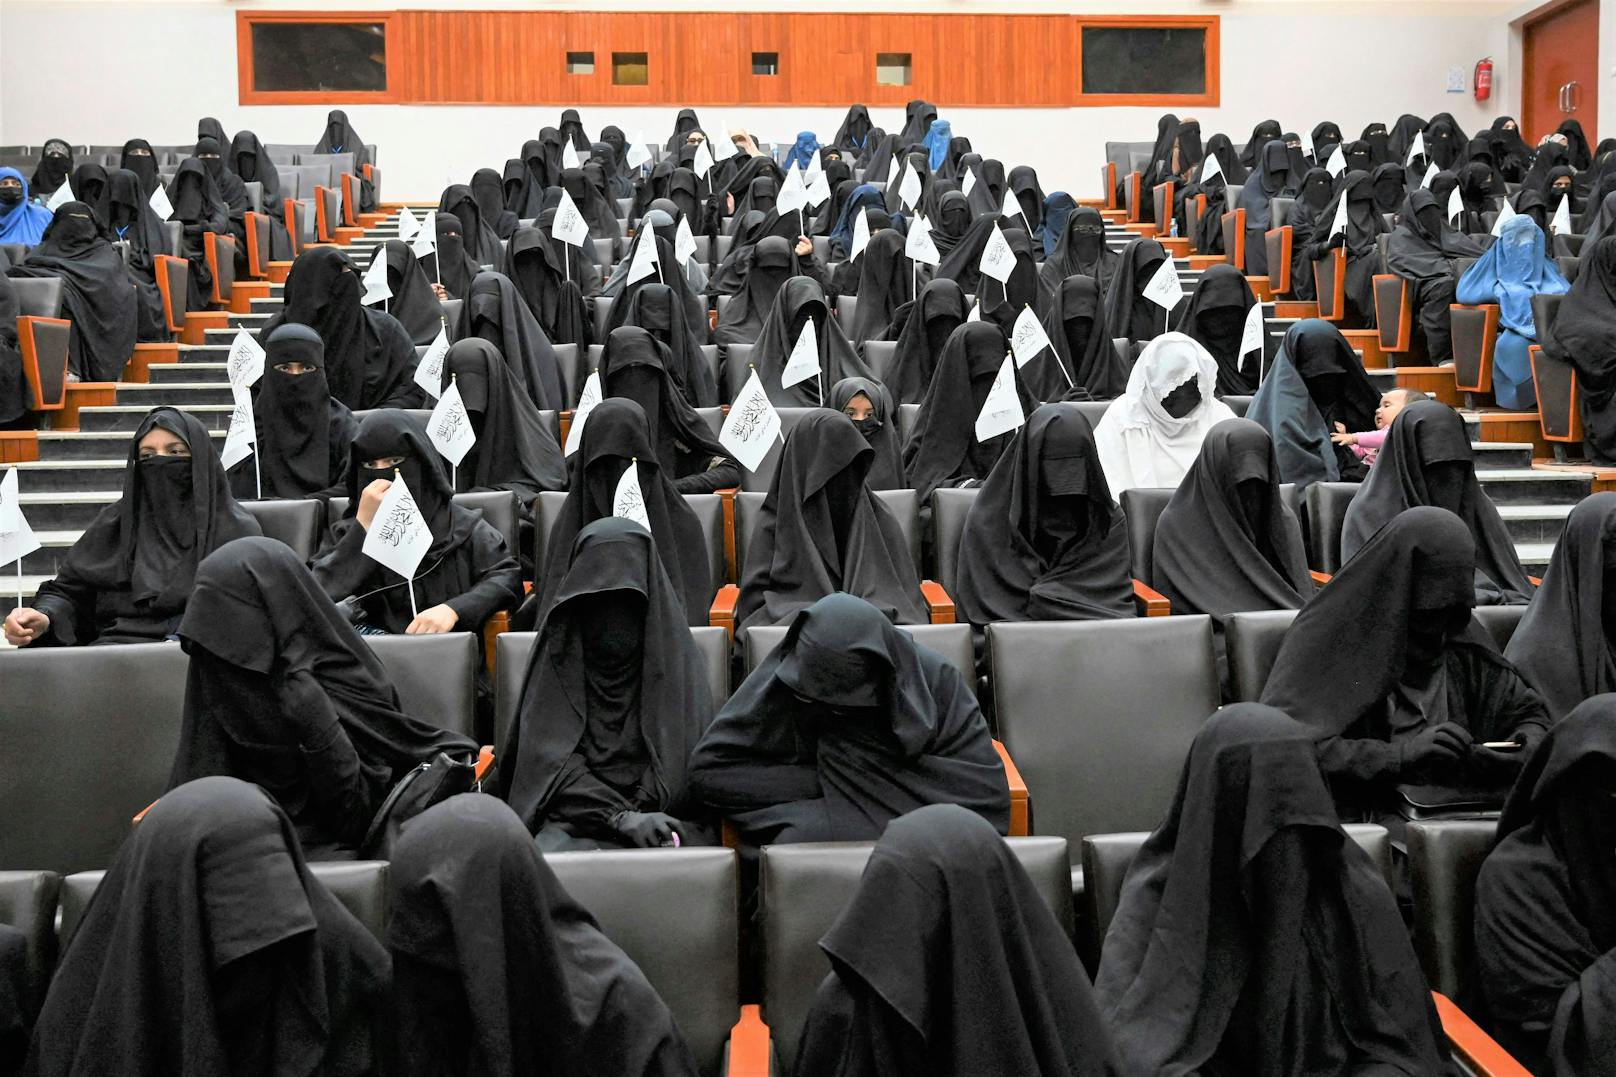 Verschleierte Frauen mit Taliban-Fähnchen im Uni-Saal